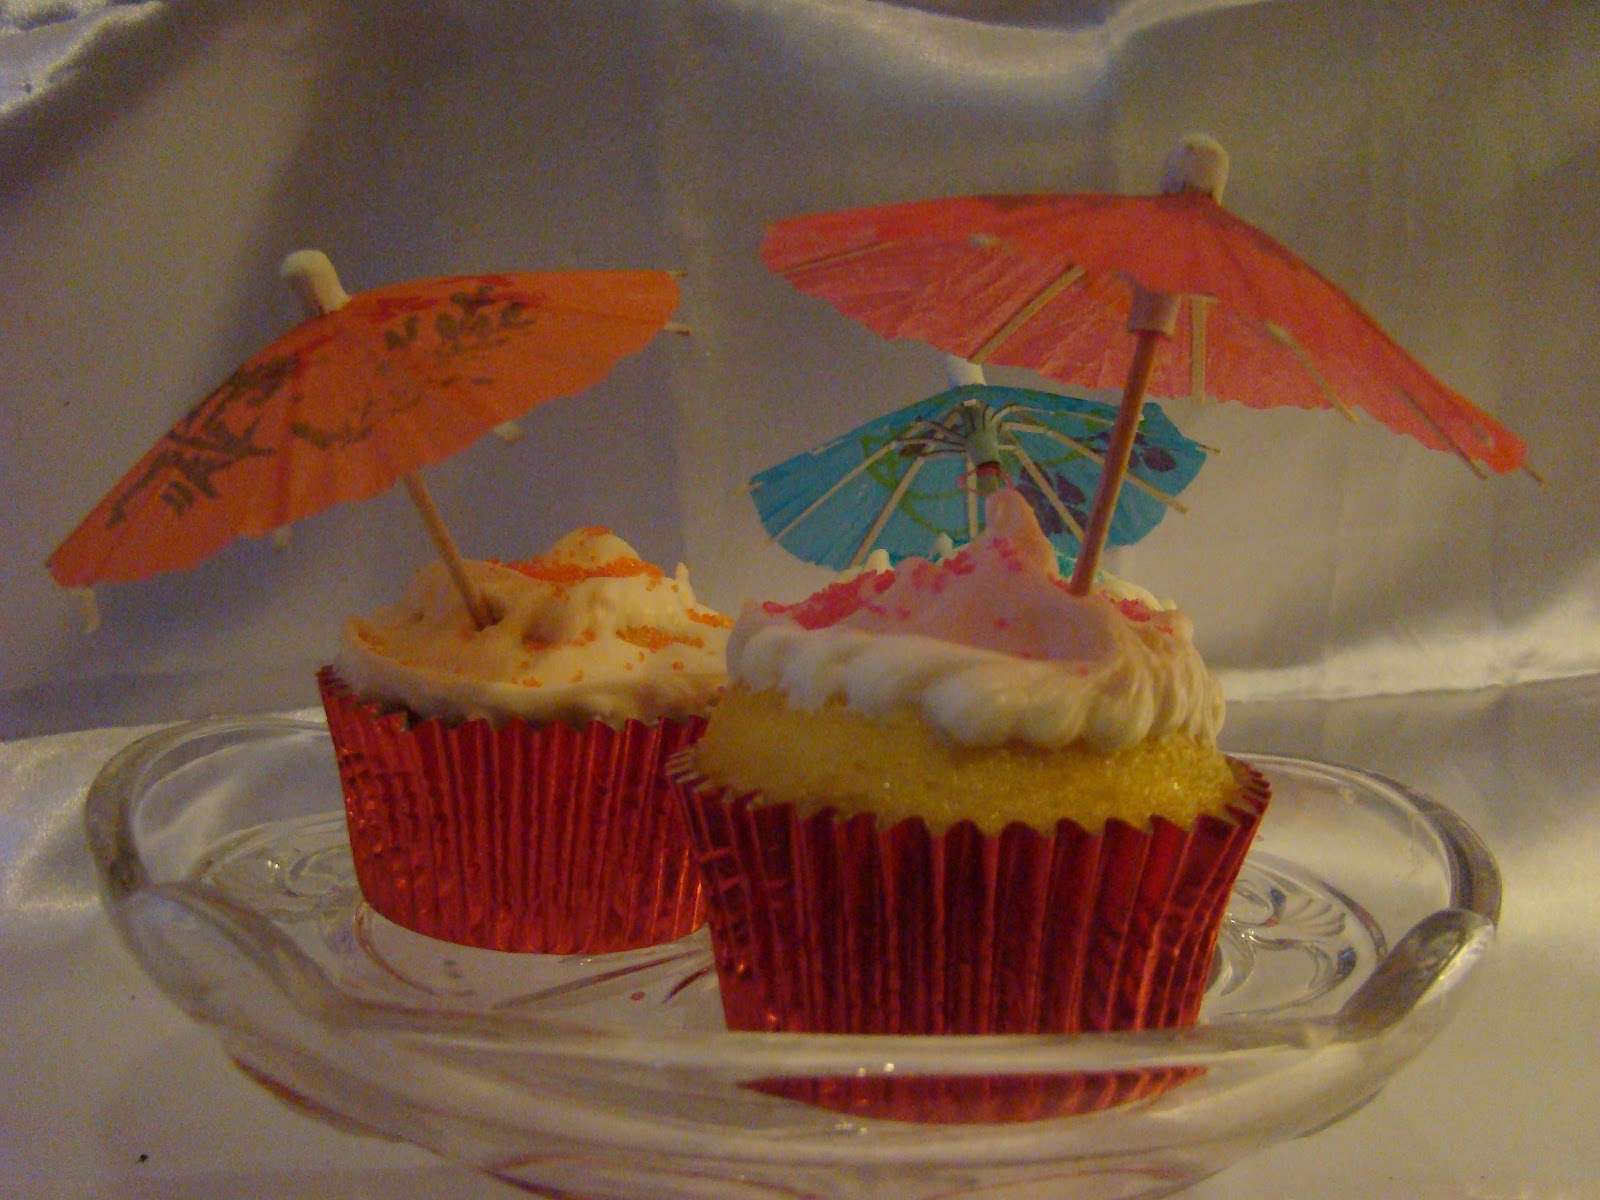 http://1.bp.blogspot.com/--EWZ76fD4es/UCxRIsKtJgI/AAAAAAAADUs/C6P7hF40iiI/s1600/a3+umbrella+cupcakes.JPG